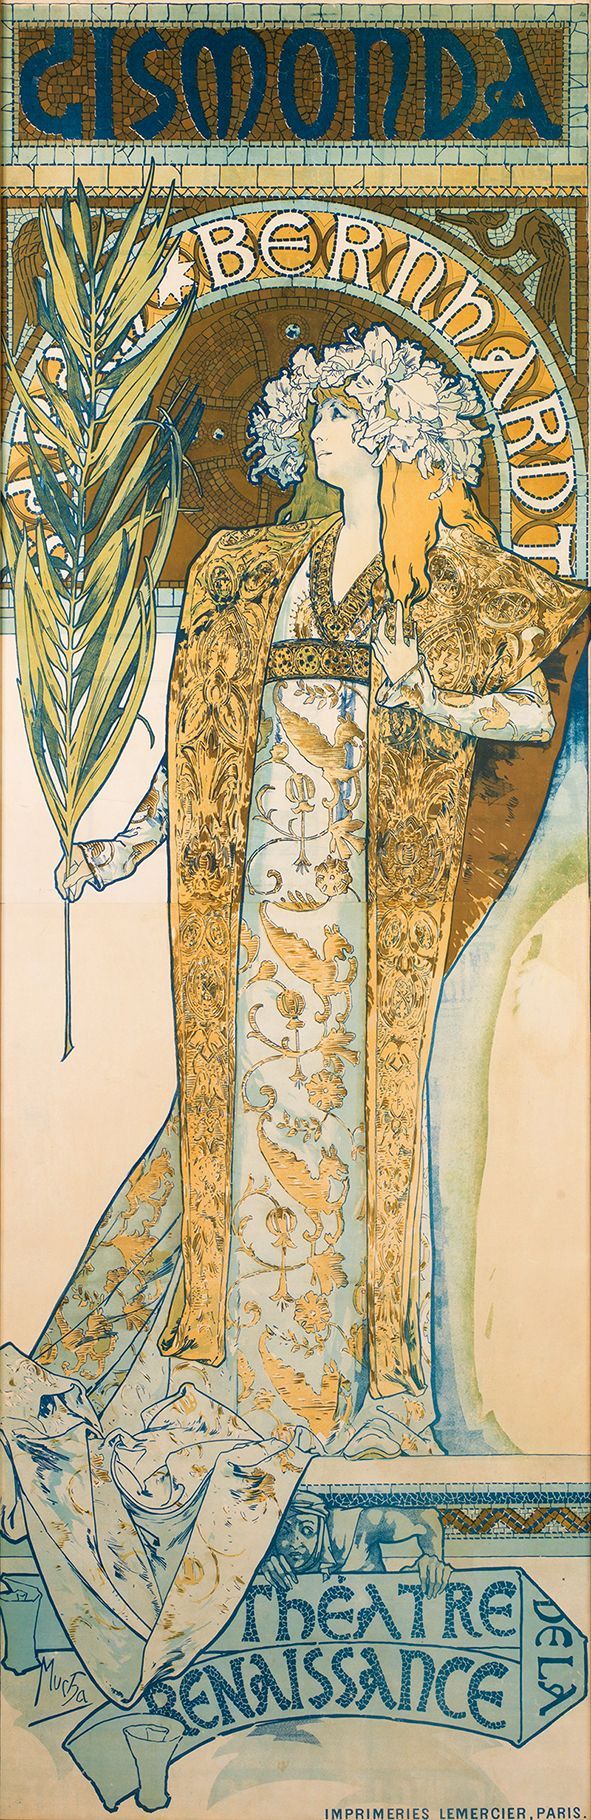 알폰스 무하 '지스몽다', 68.2x210.8㎝, 1894년  [사진= 마이아트뮤지엄 제공]